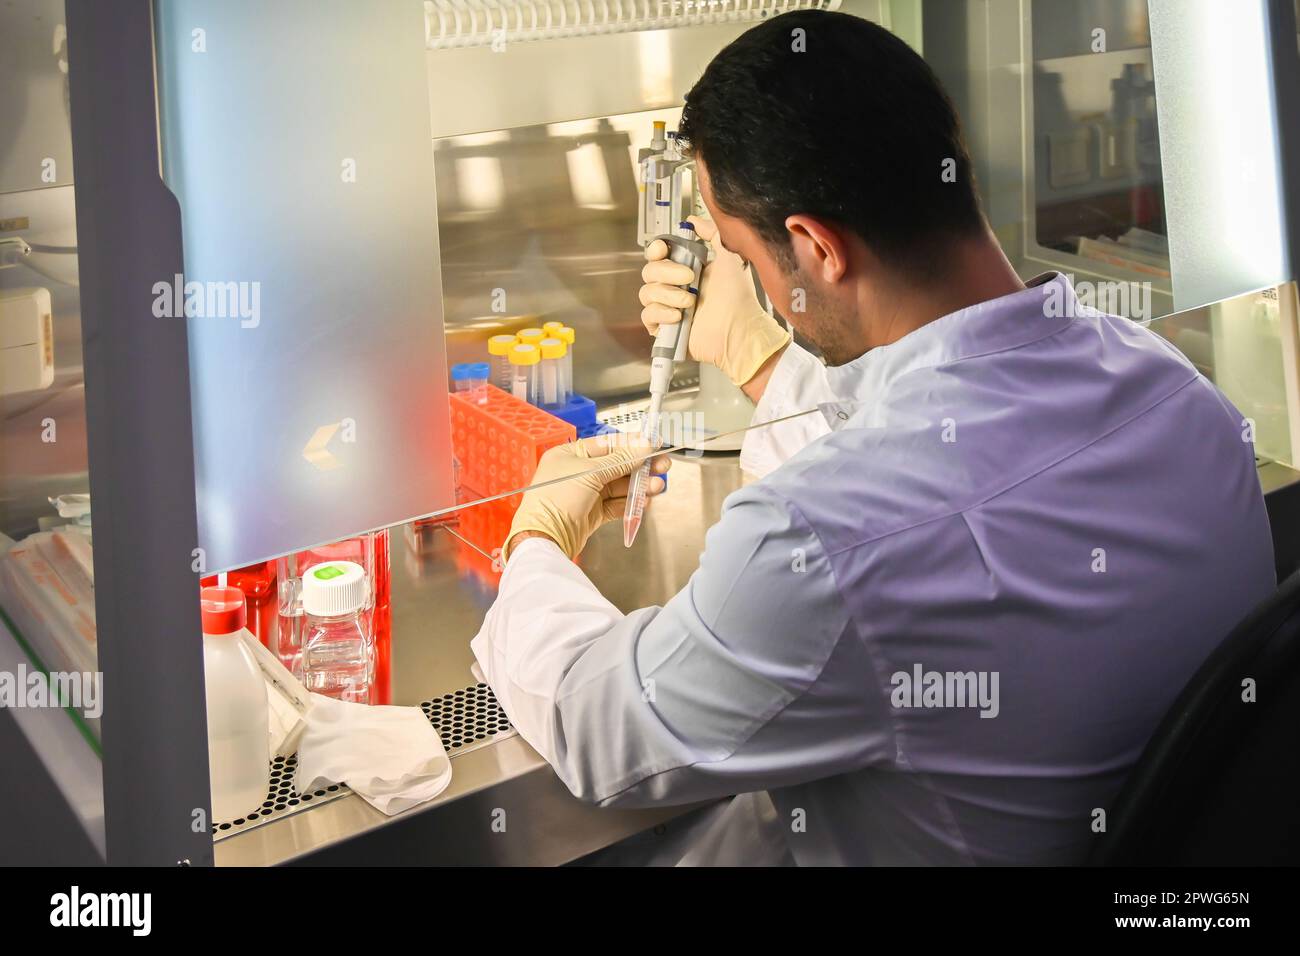 Arbeiten Sie in einem Laminar-Karton. Laborausrüstung für die Untersuchung von Zellkulturen. Stockfoto